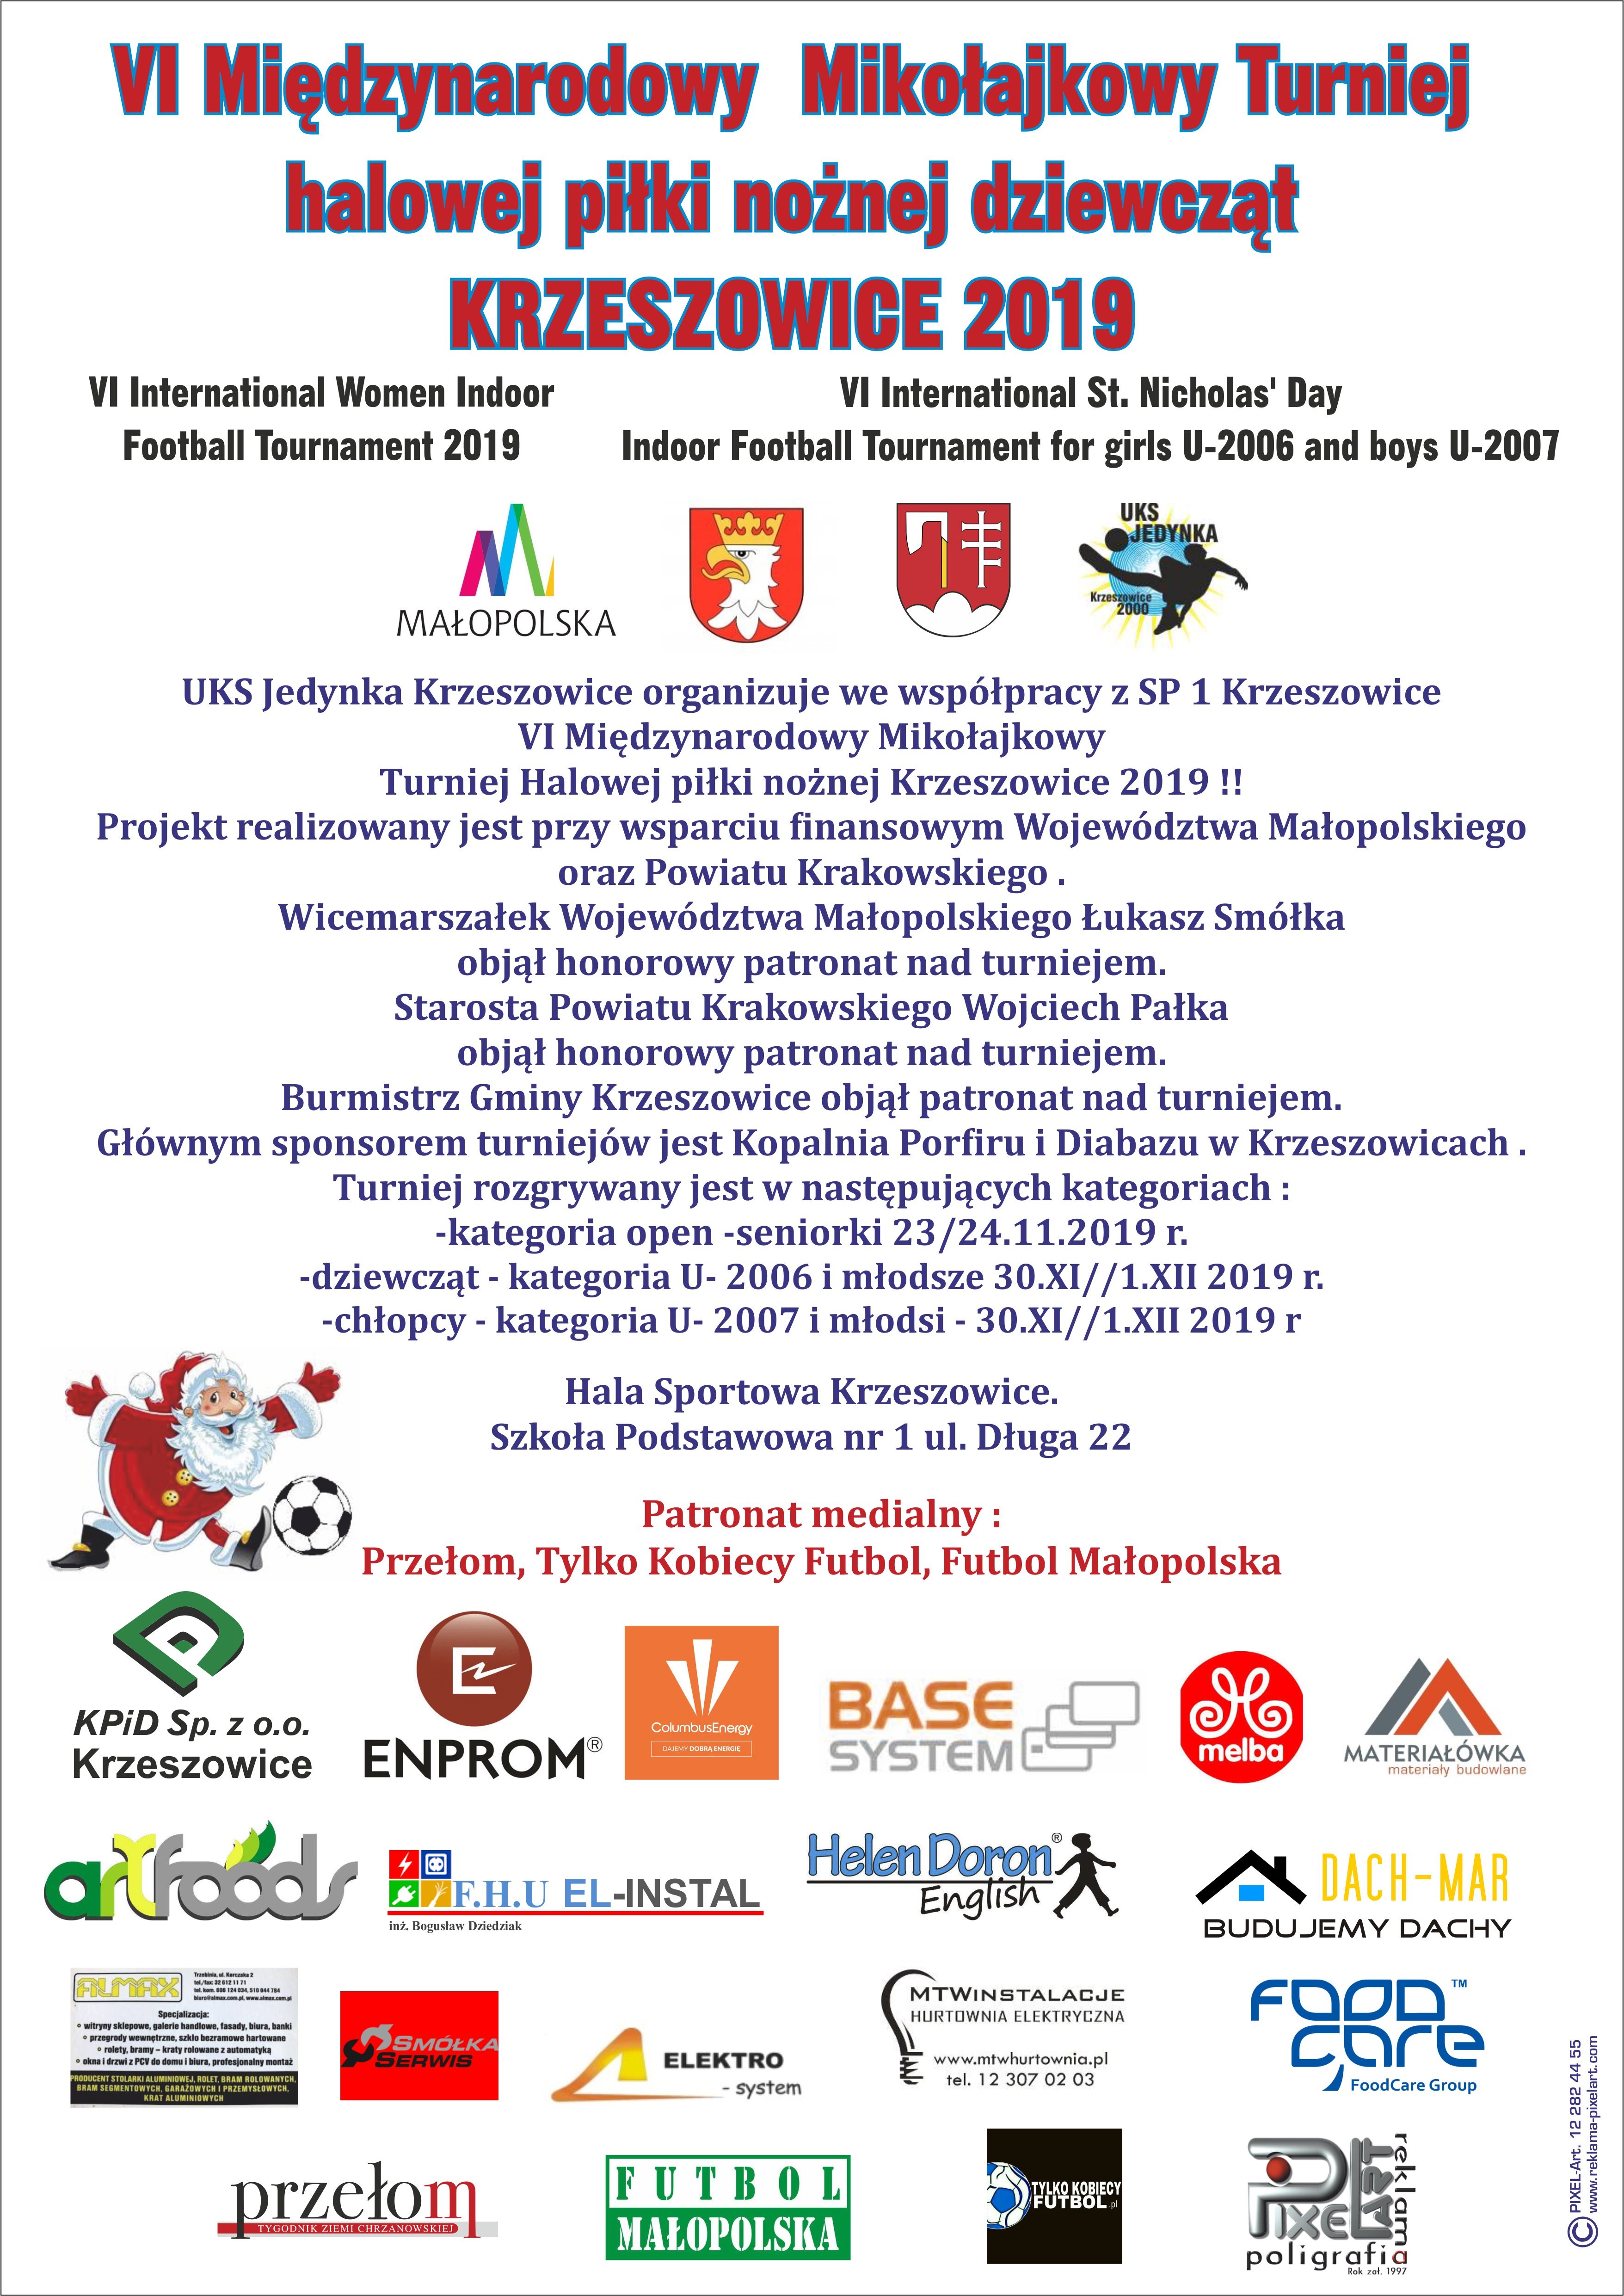 VI Międzynarodowy Mikołajkowy Turniej halowej piłki nożnej kobiet.